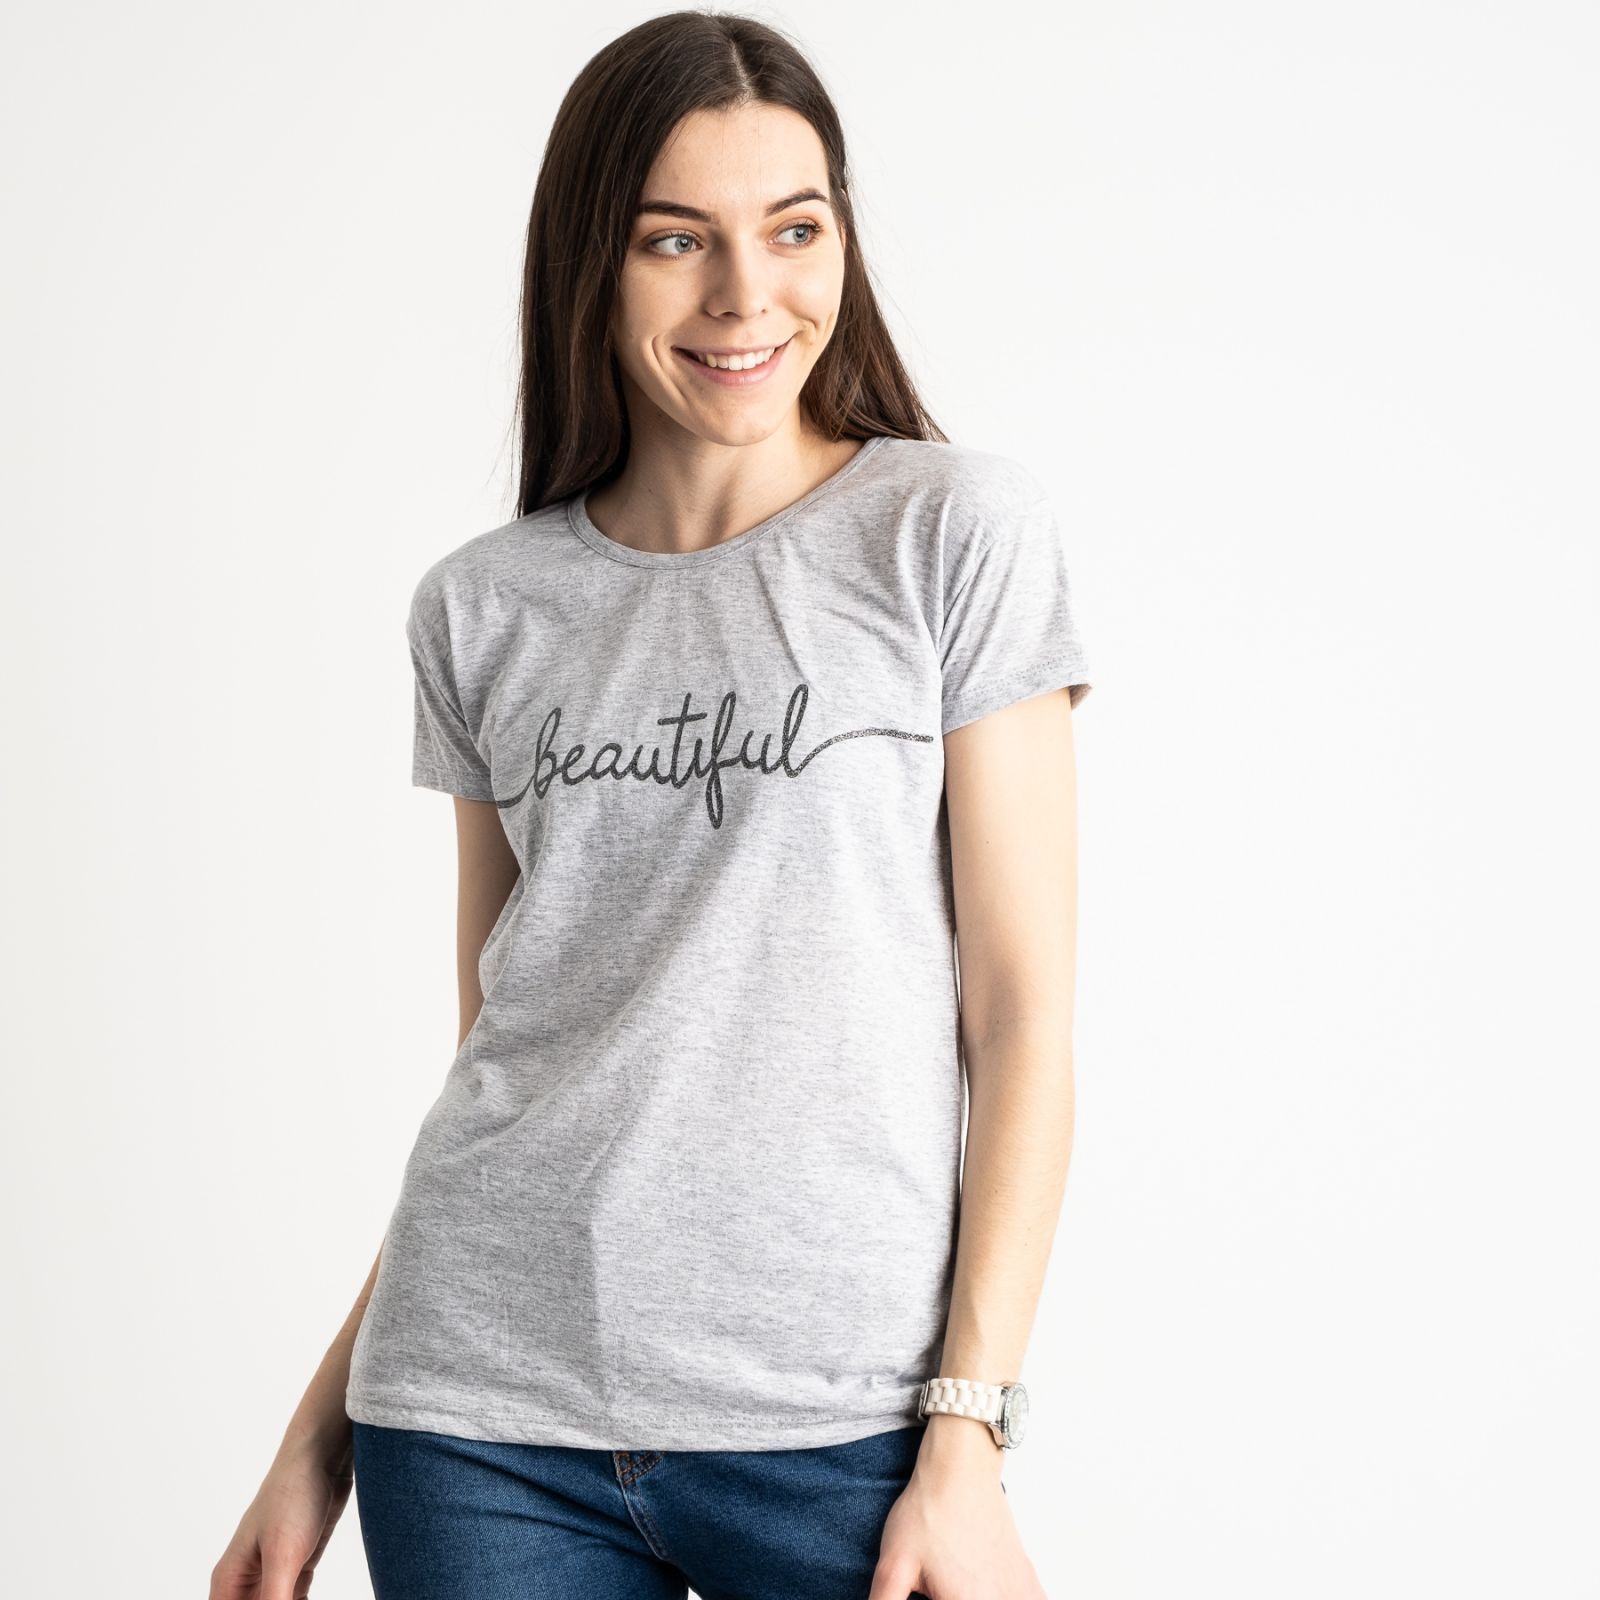 2574-5 серая футболка женская с принтом (3 ед. размеры: S.M.L)